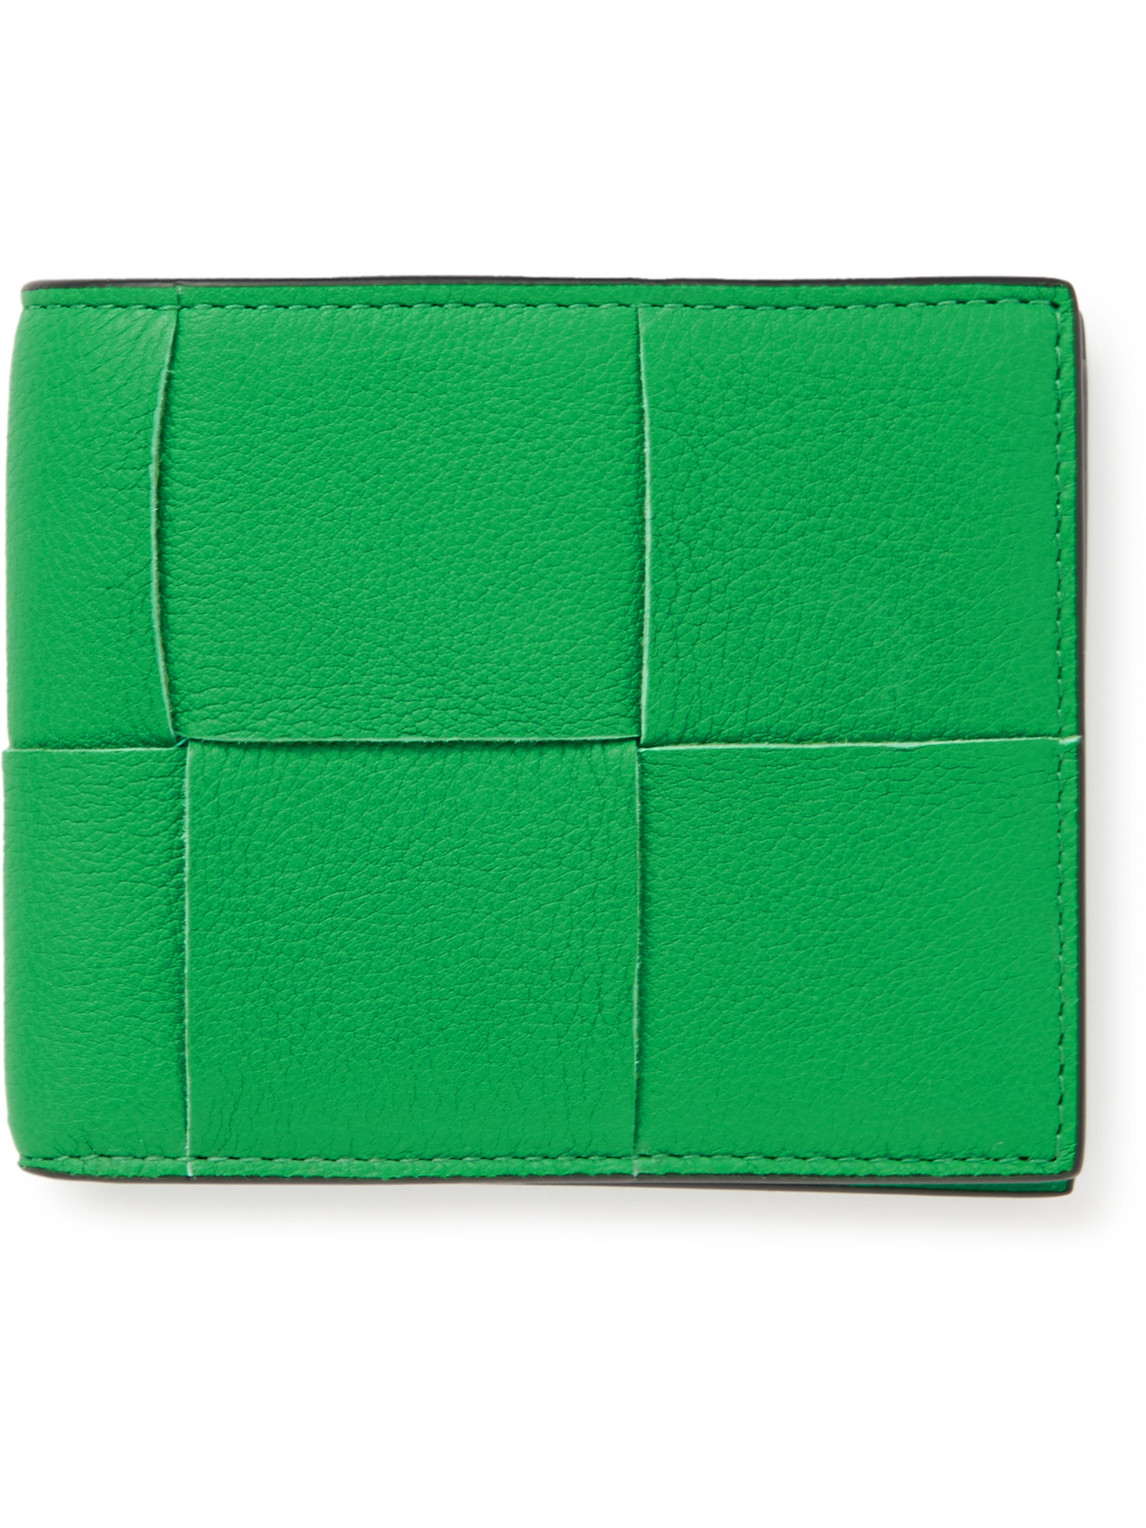 Bottega Veneta Intrecciato Full-grain Leather Billfold Wallet In Green